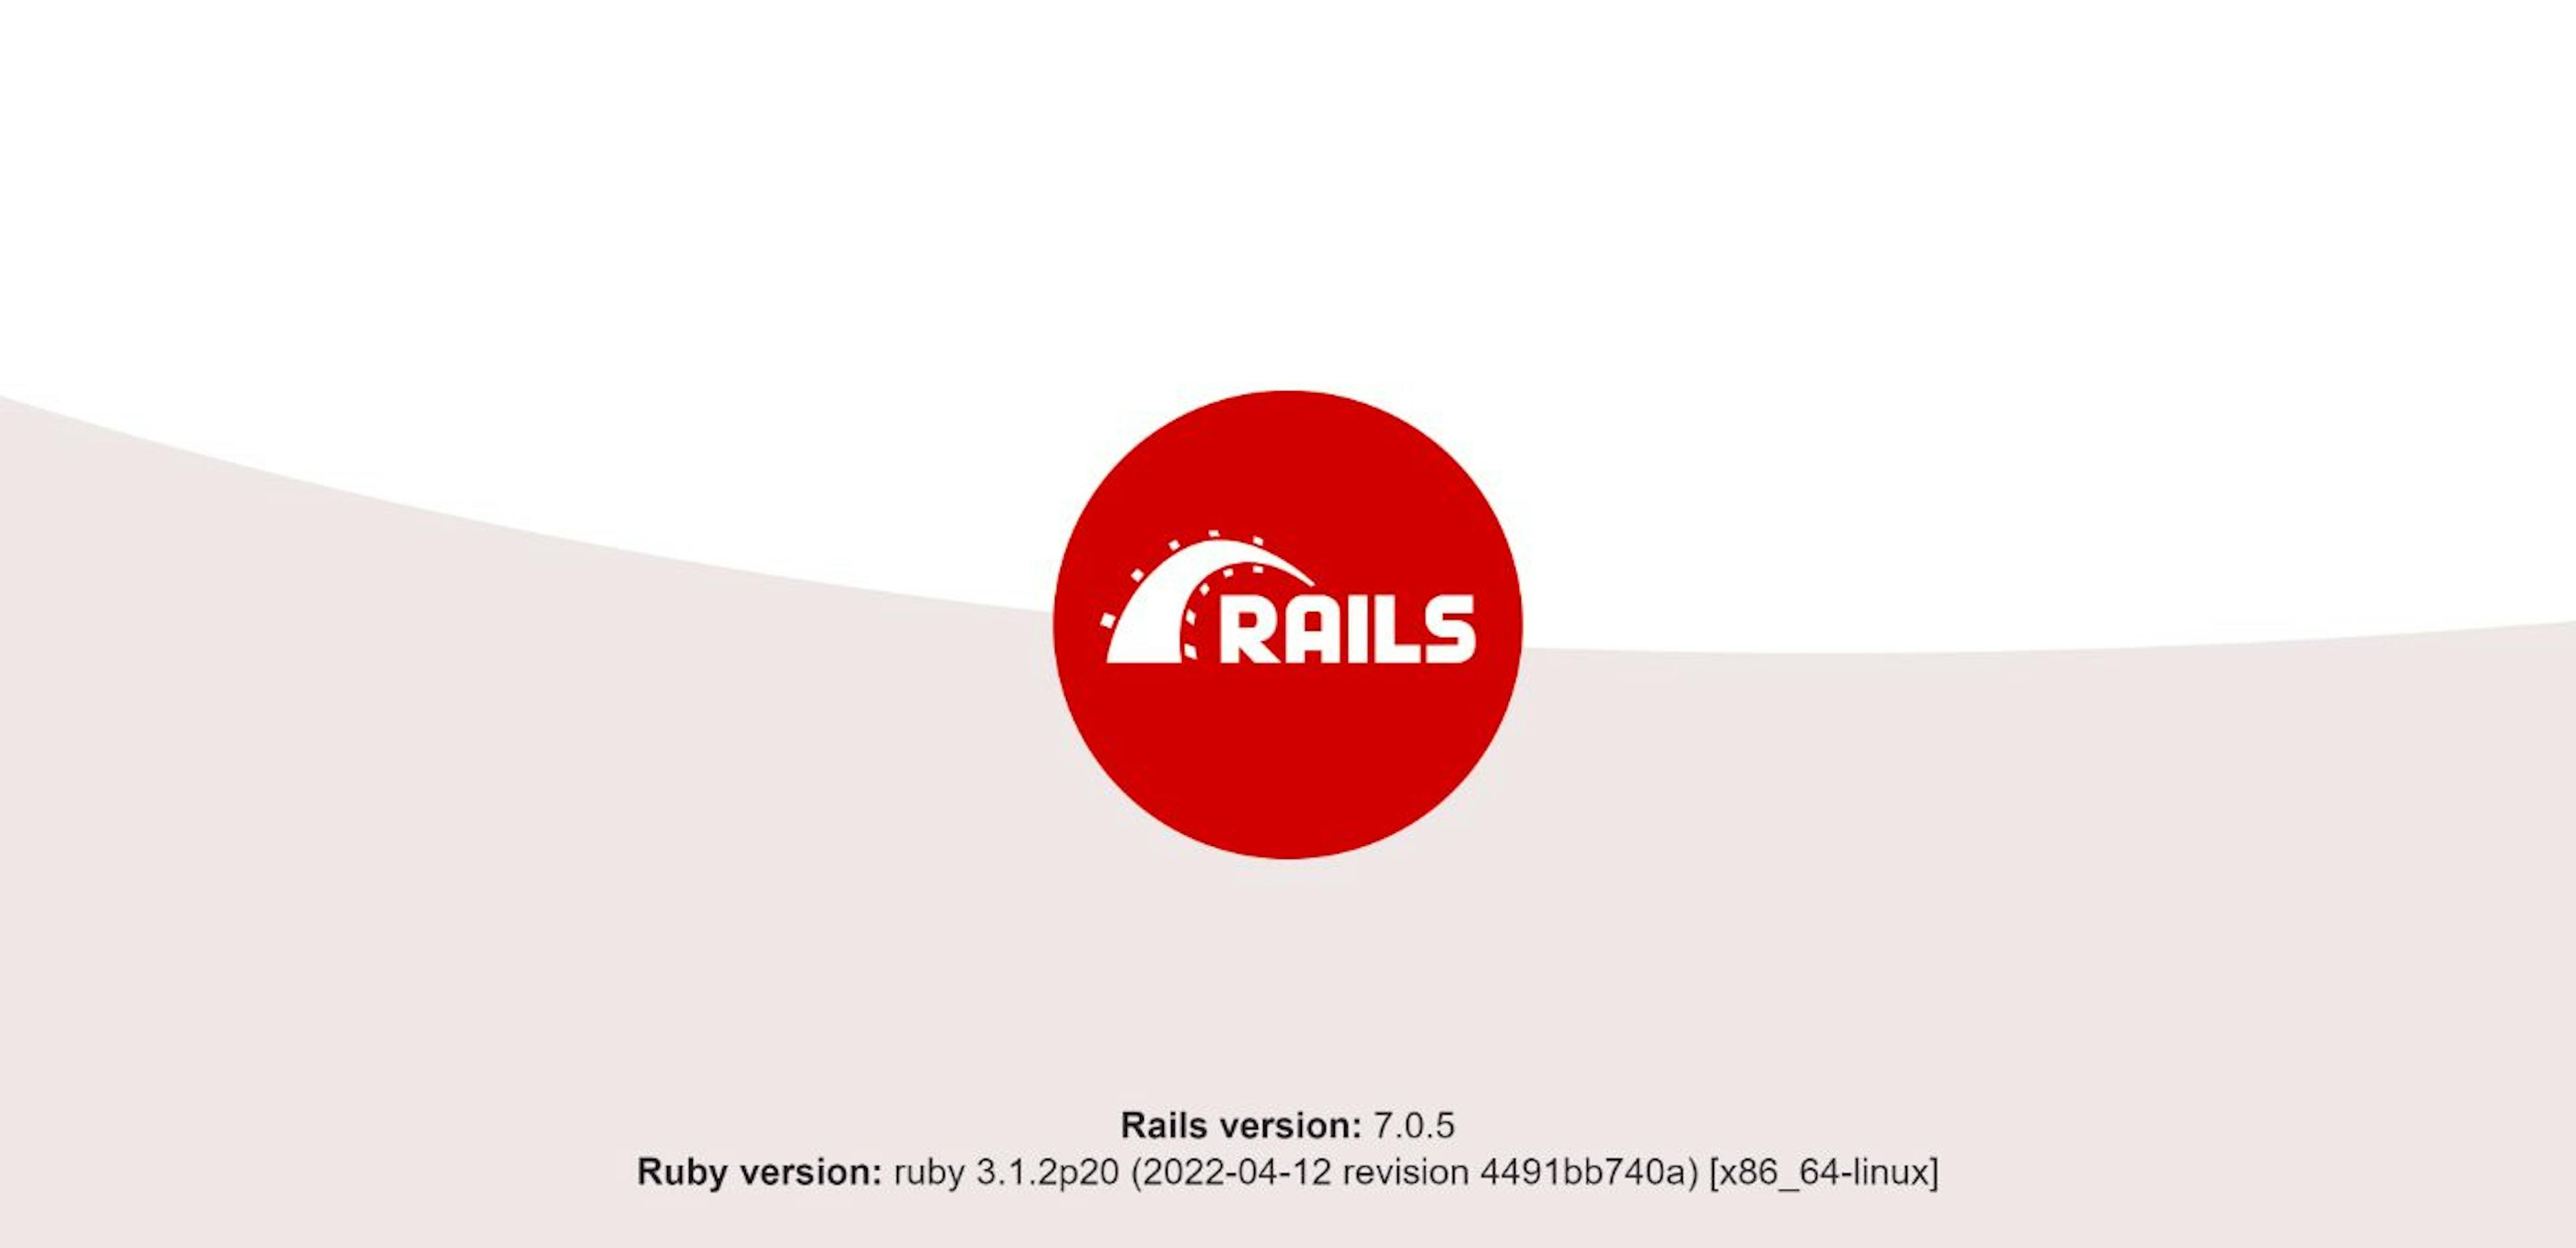 Trang chào mừng Rails